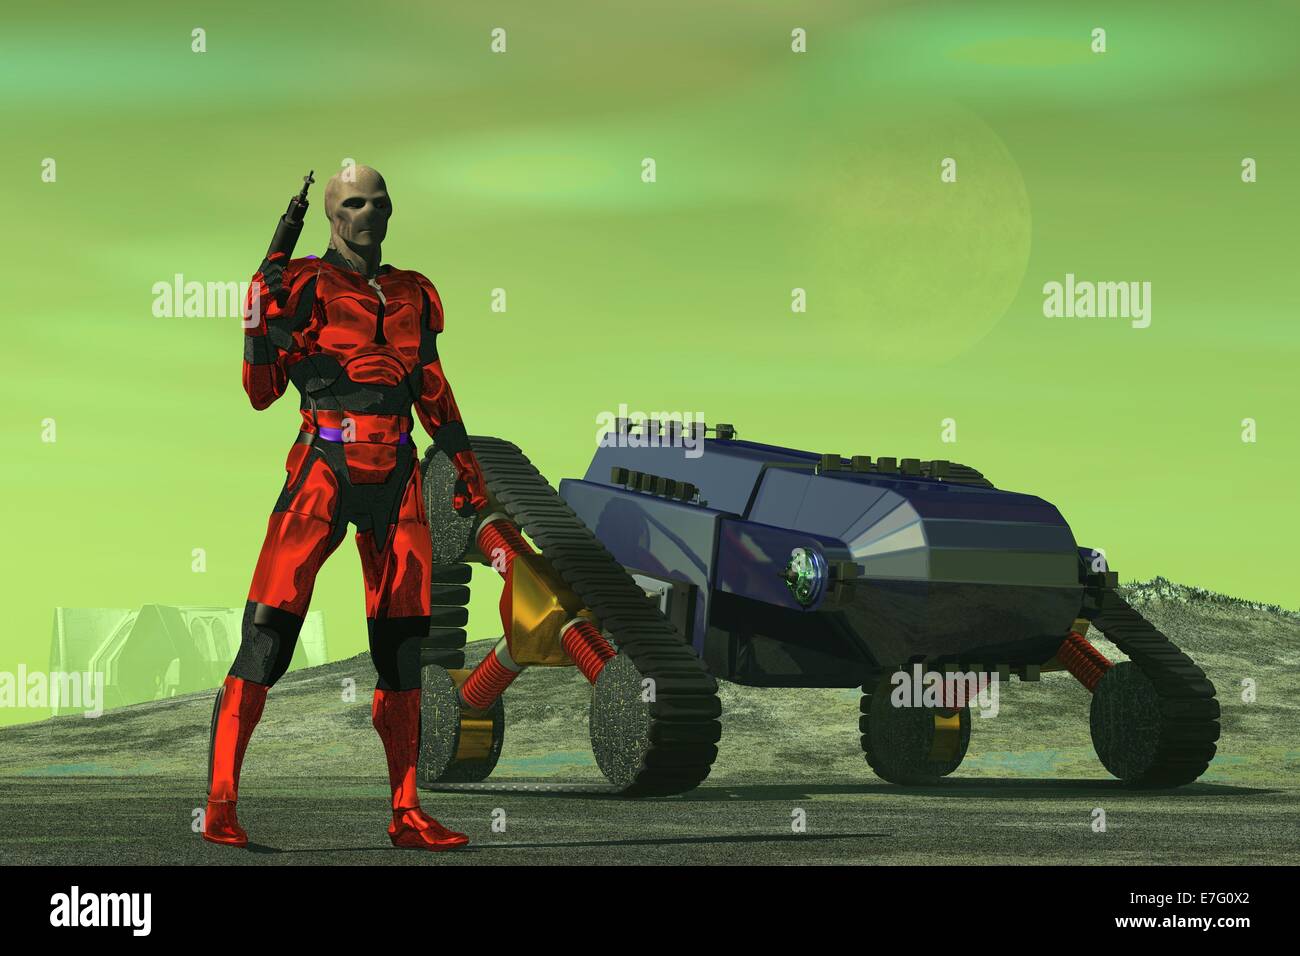 Extranjero figura en rojo metálico cuerpo armor holding raygun rodal cercano vehículo oruga y encuestas paisaje desolado bajo el cielo verde Foto de stock